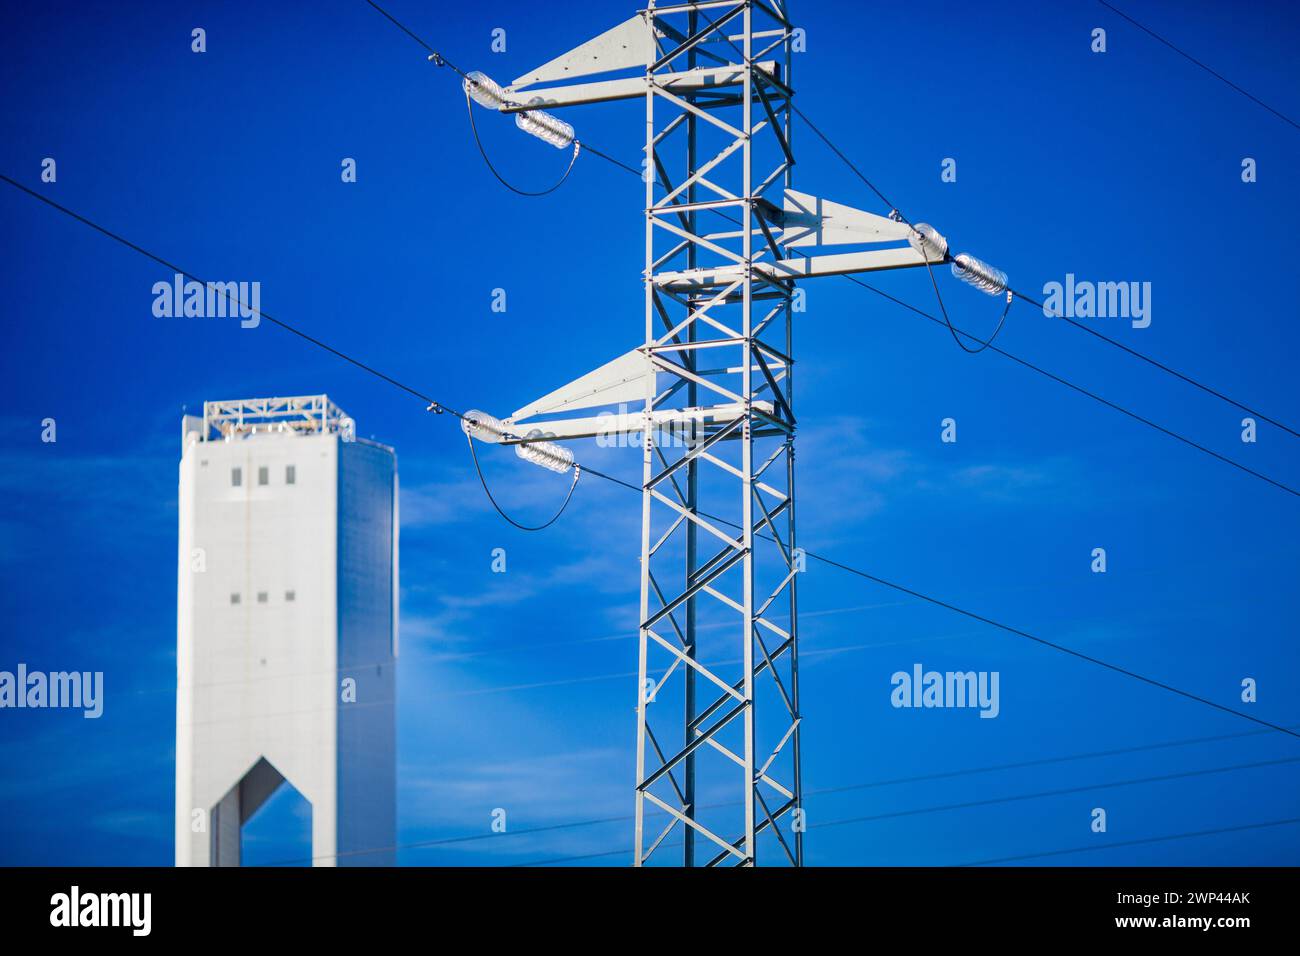 Hochspannungsleitungen, die neben einer hochaufragenden Solaranlage unter blauem Himmel verlaufen. Stockfoto